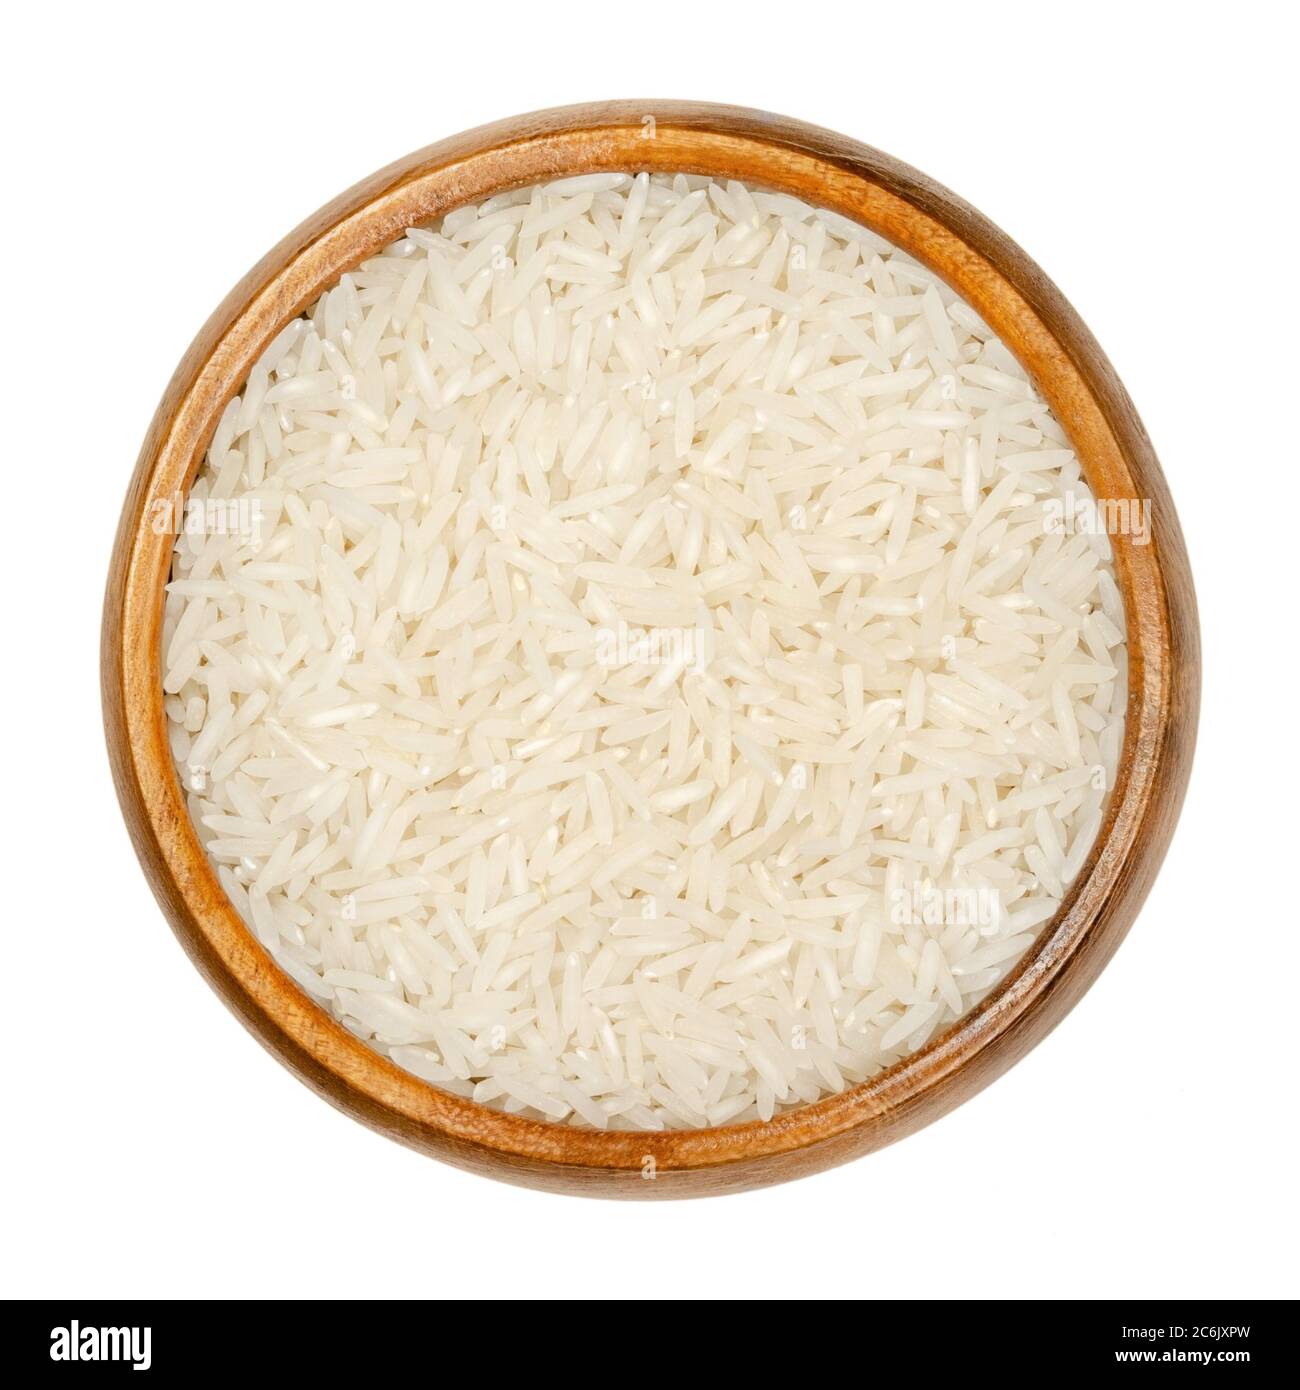 Arroz Basmati blanco en cuenco de madera. Variedad de arroz con granos largos y esbeltos y olor y sabor aromáticos, tradicionalmente del subcontinente indio. Foto de stock